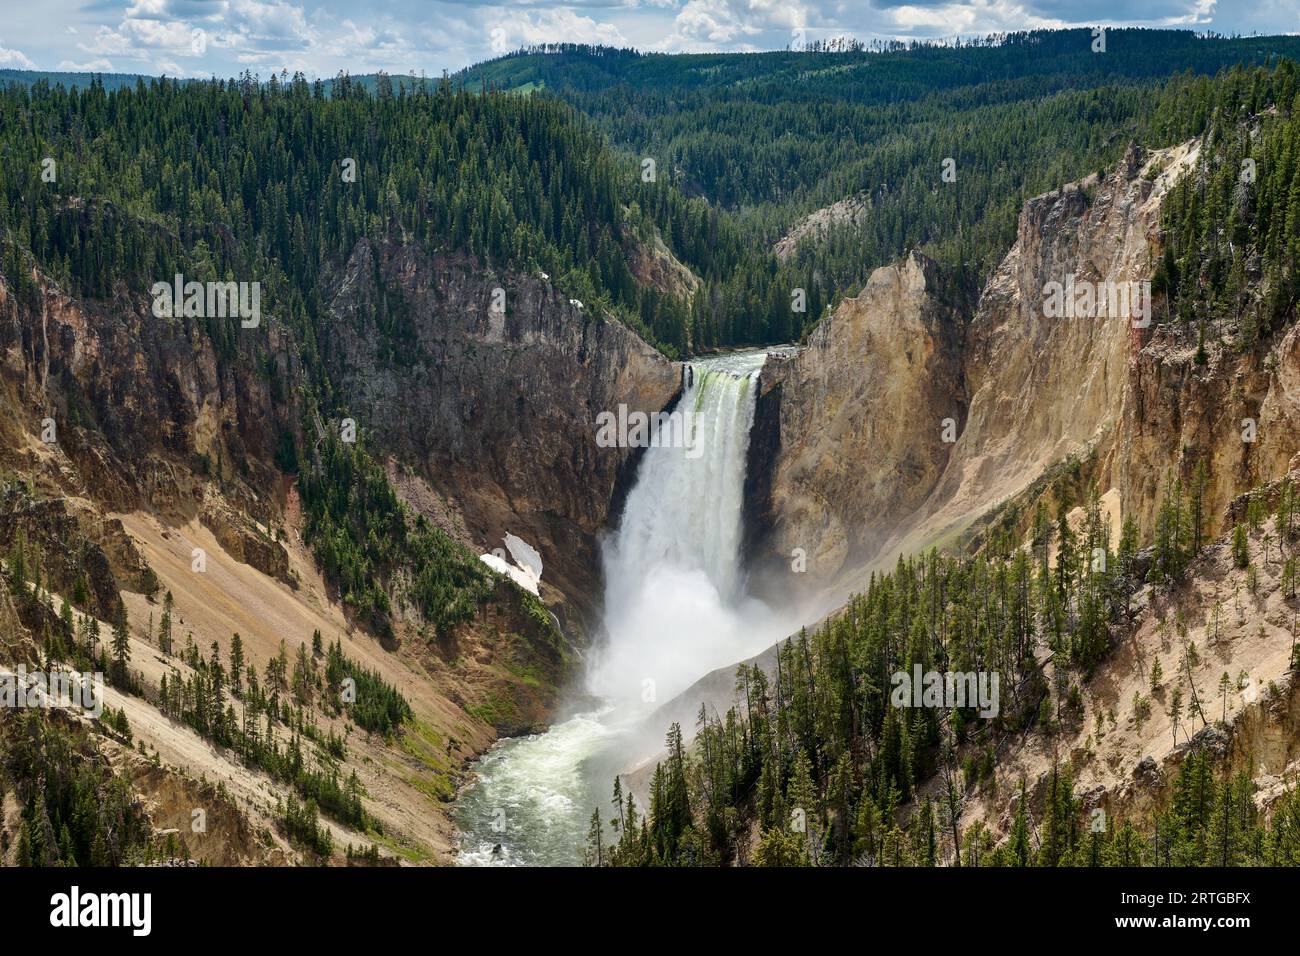 Cascate inferiori del fiume Yellowstone, parco nazionale di Yellowstone, Wyoming, Stati Uniti d'America Foto Stock